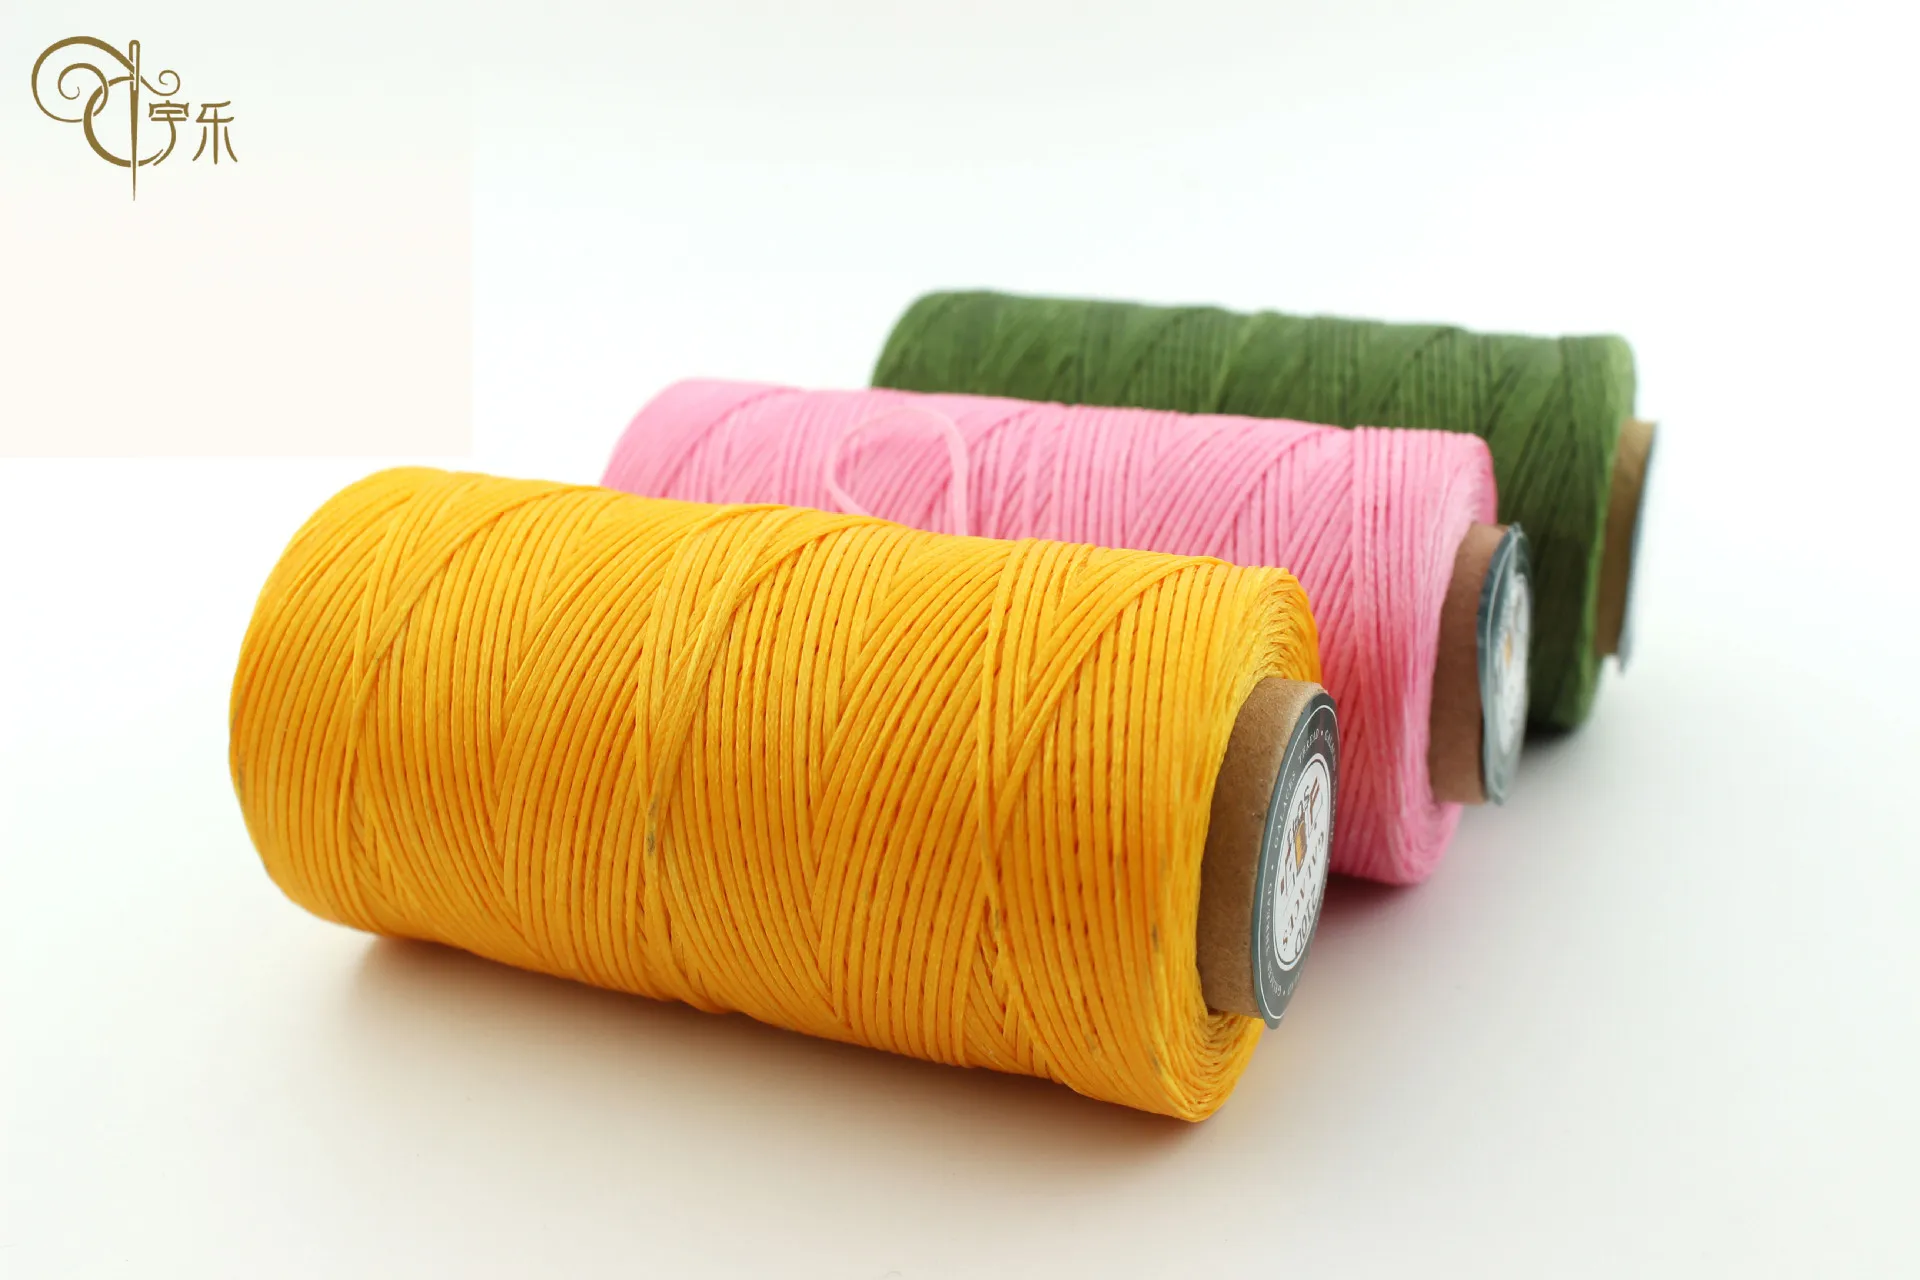 Плоская вощеная нить шнур из полиэстера шитье сумка переплет плетение браслет оплетка ювелирные изделия «сделай сам» воск для